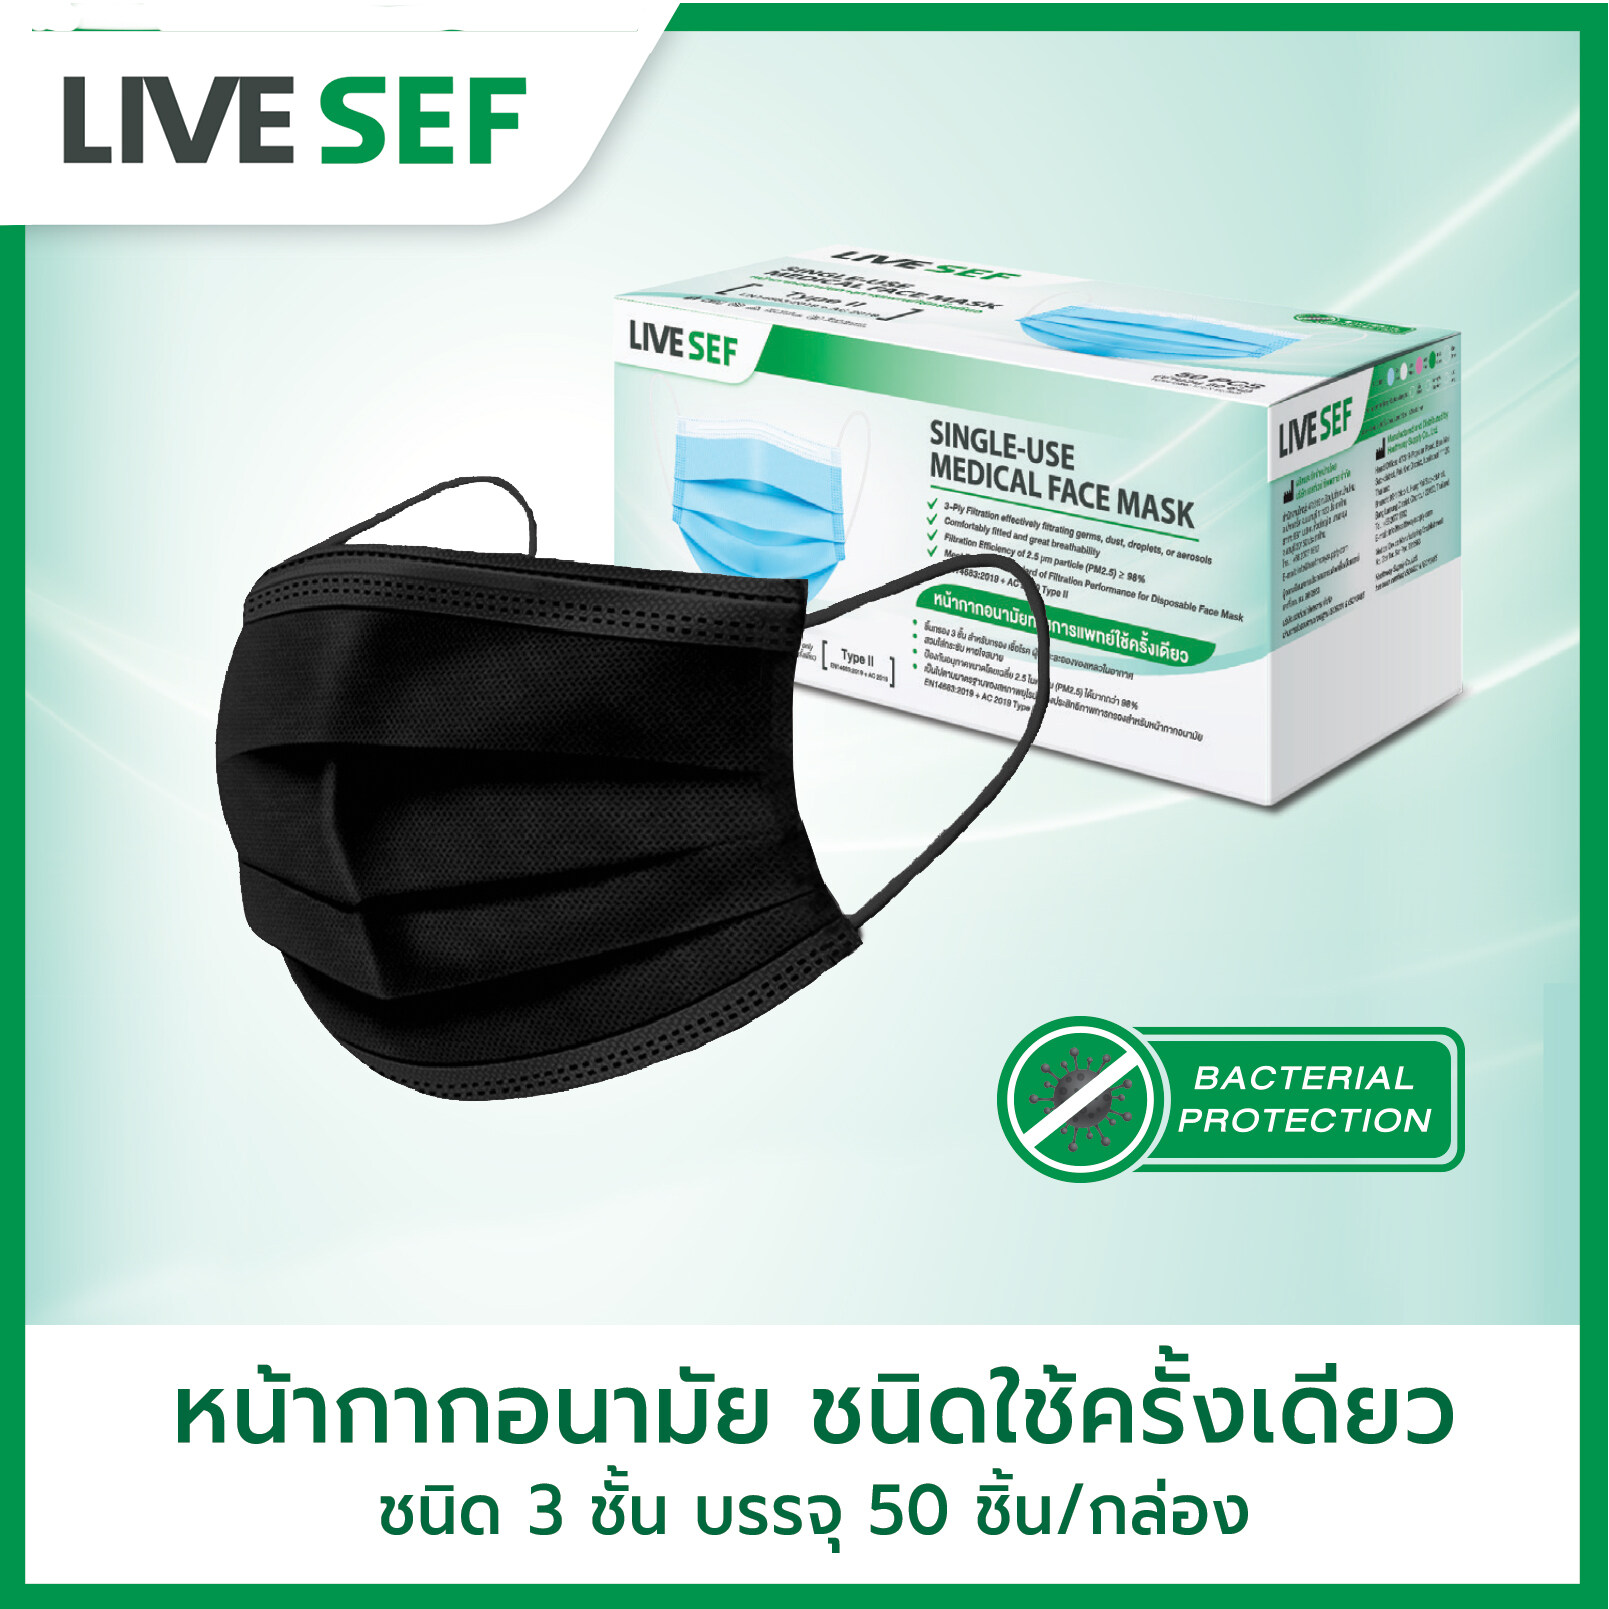 LIVE SEF หน้ากากอนามัยใช้ครั้งเดียว ชั้นกรอง 3 ชั้น ผลิตในไทย (50ชิ้น/กล่อง) - สีดำ